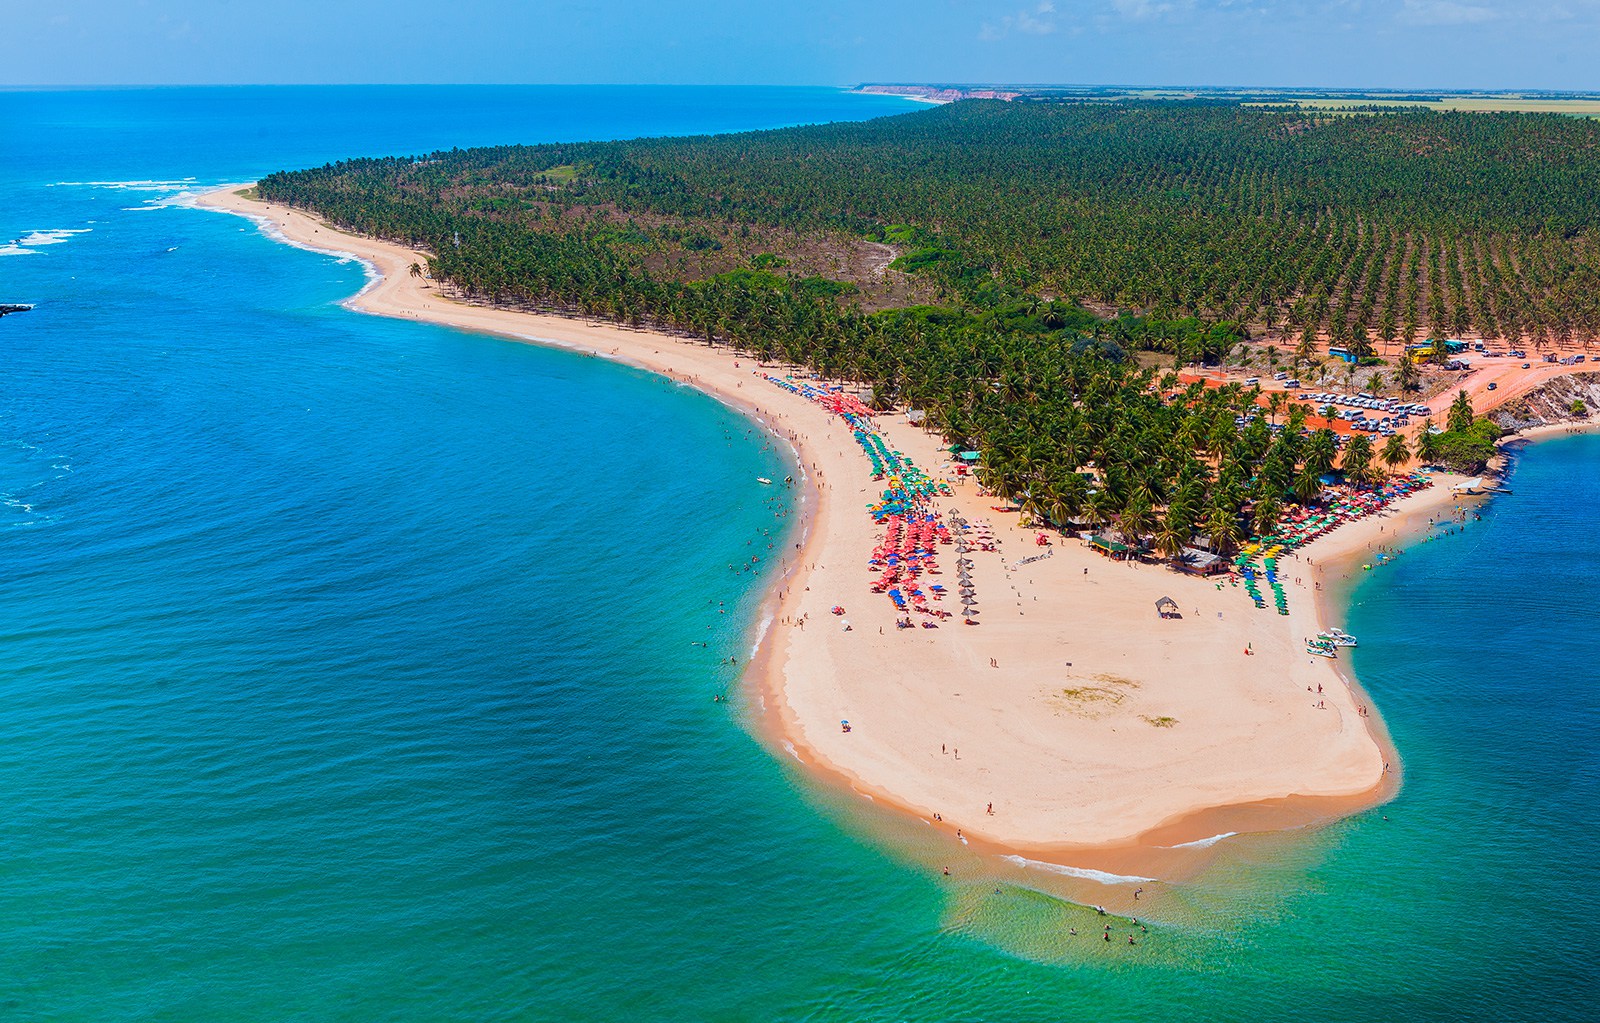 Imagem aérea da Praia do Gunga, localizada próximo a Maceió Alagoas.